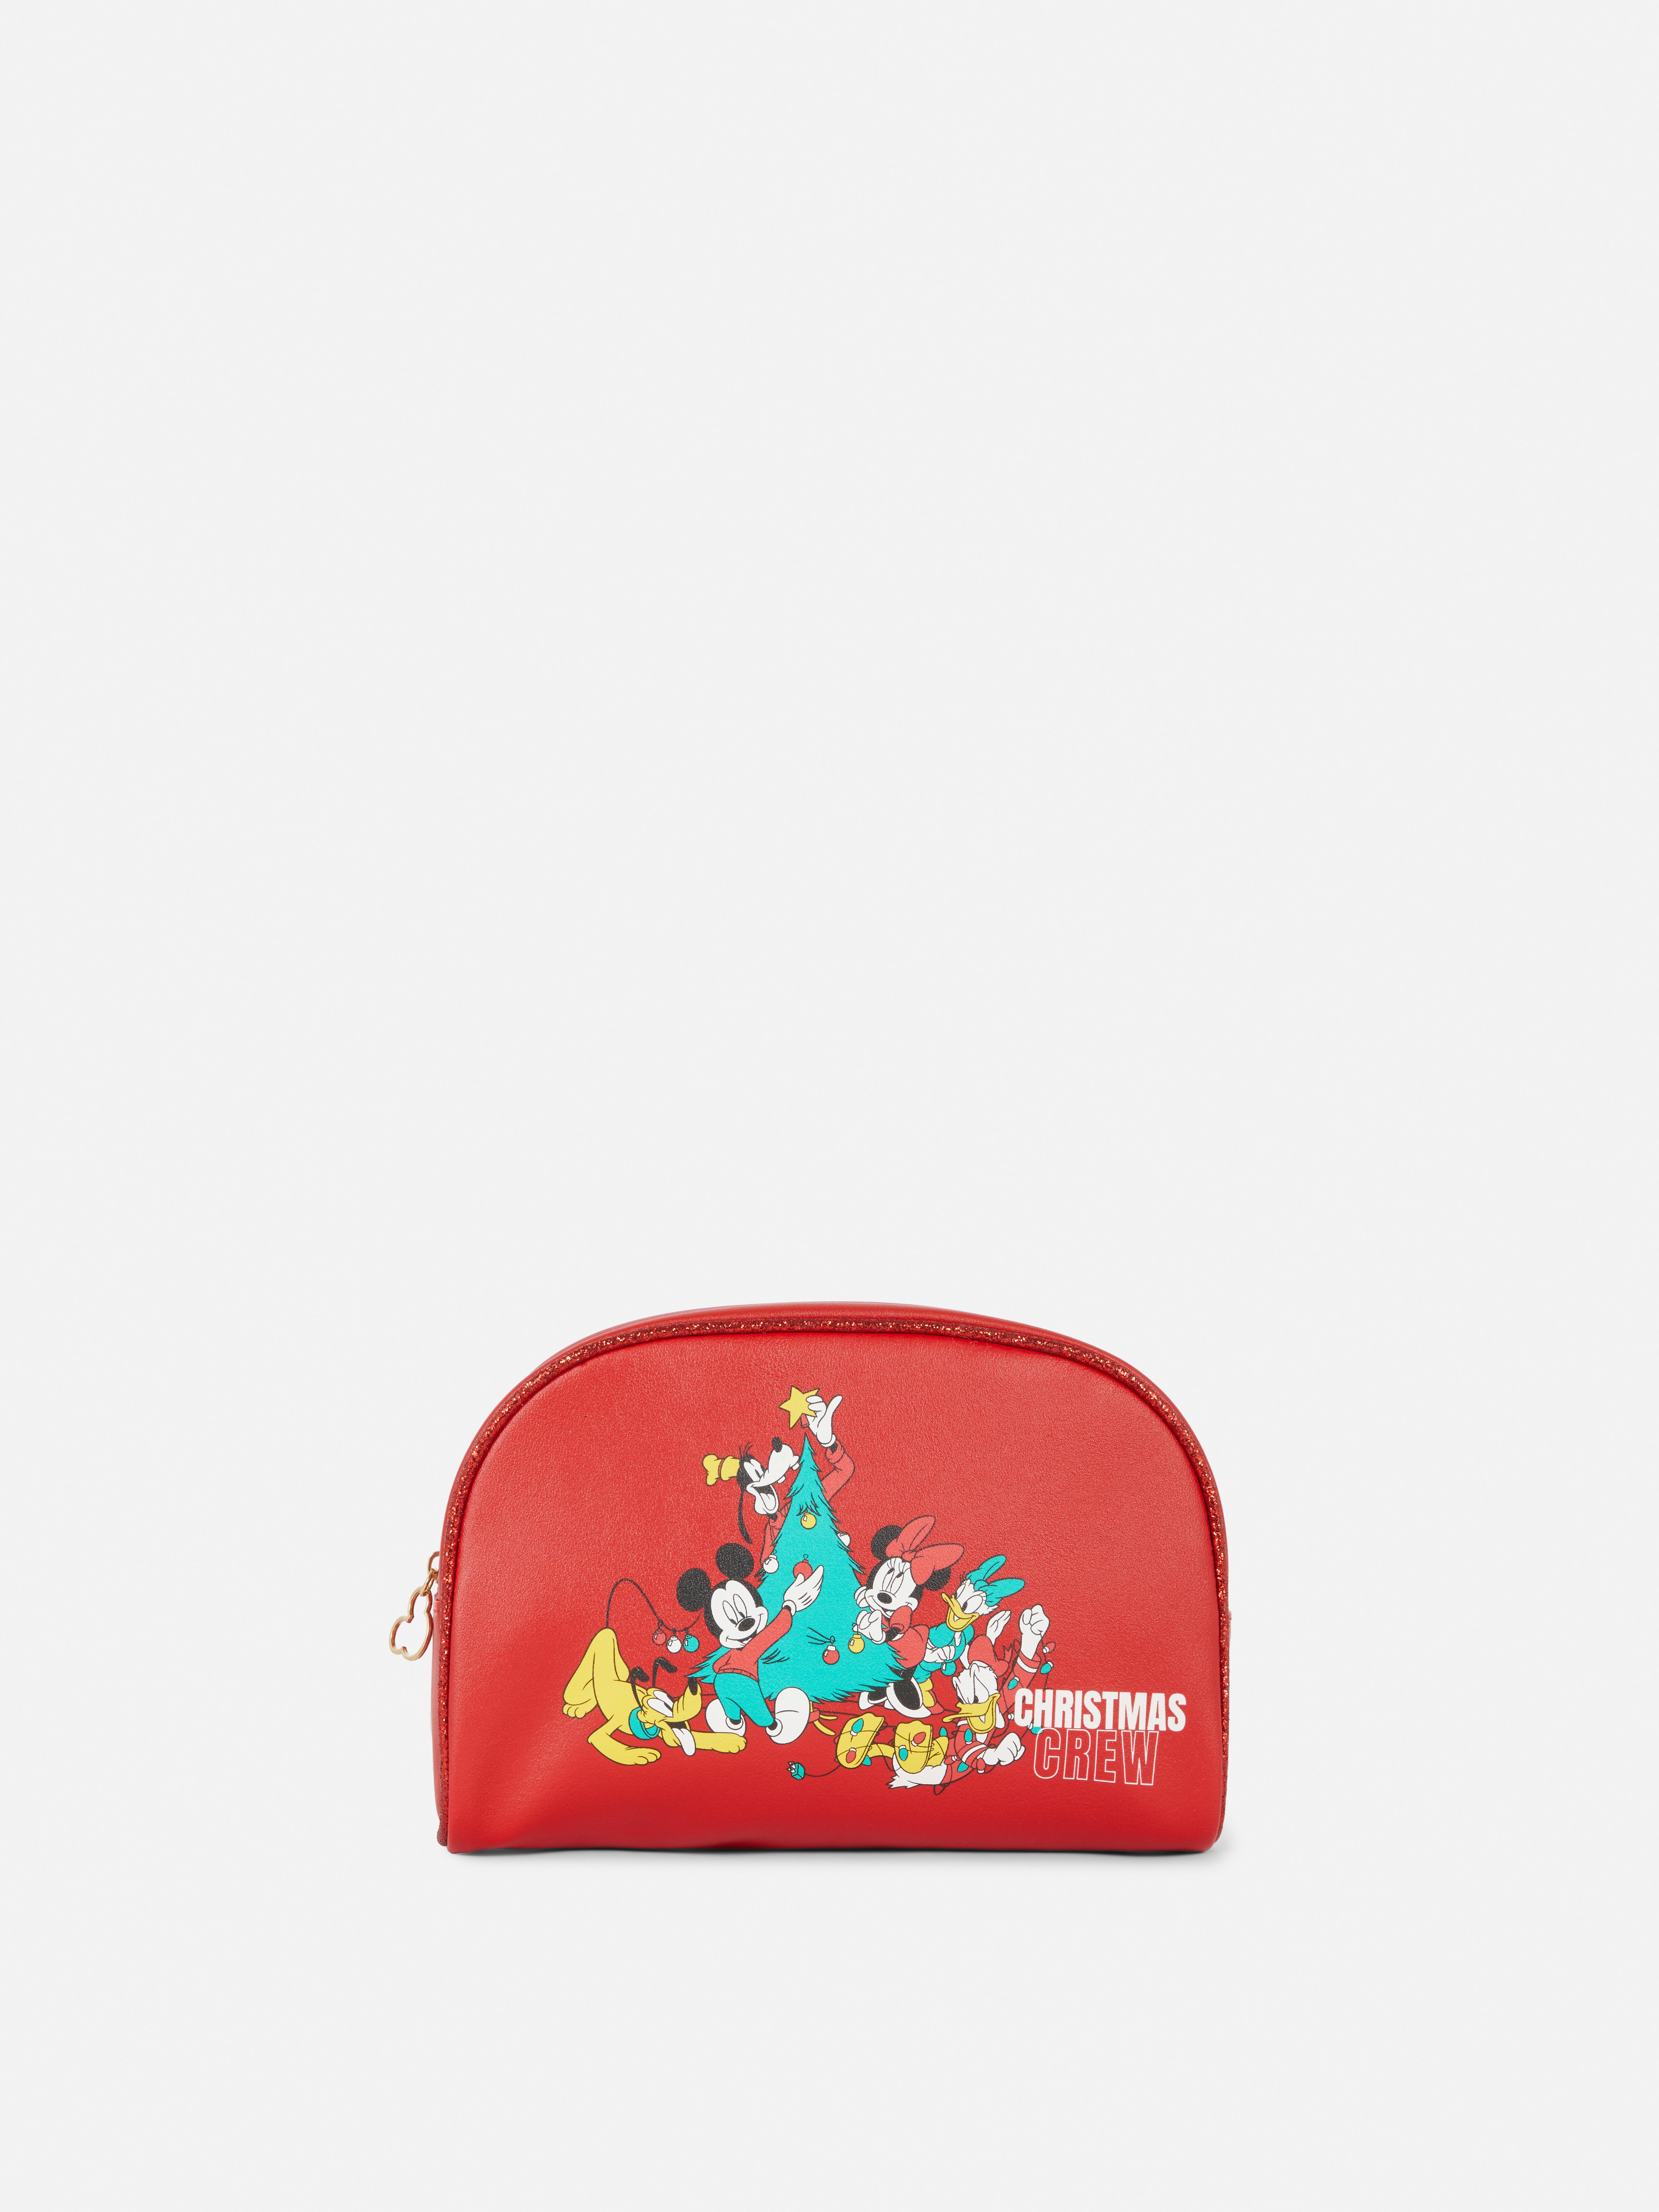 Disney's Mickey Mouse Christmas Crew Makeup Bag